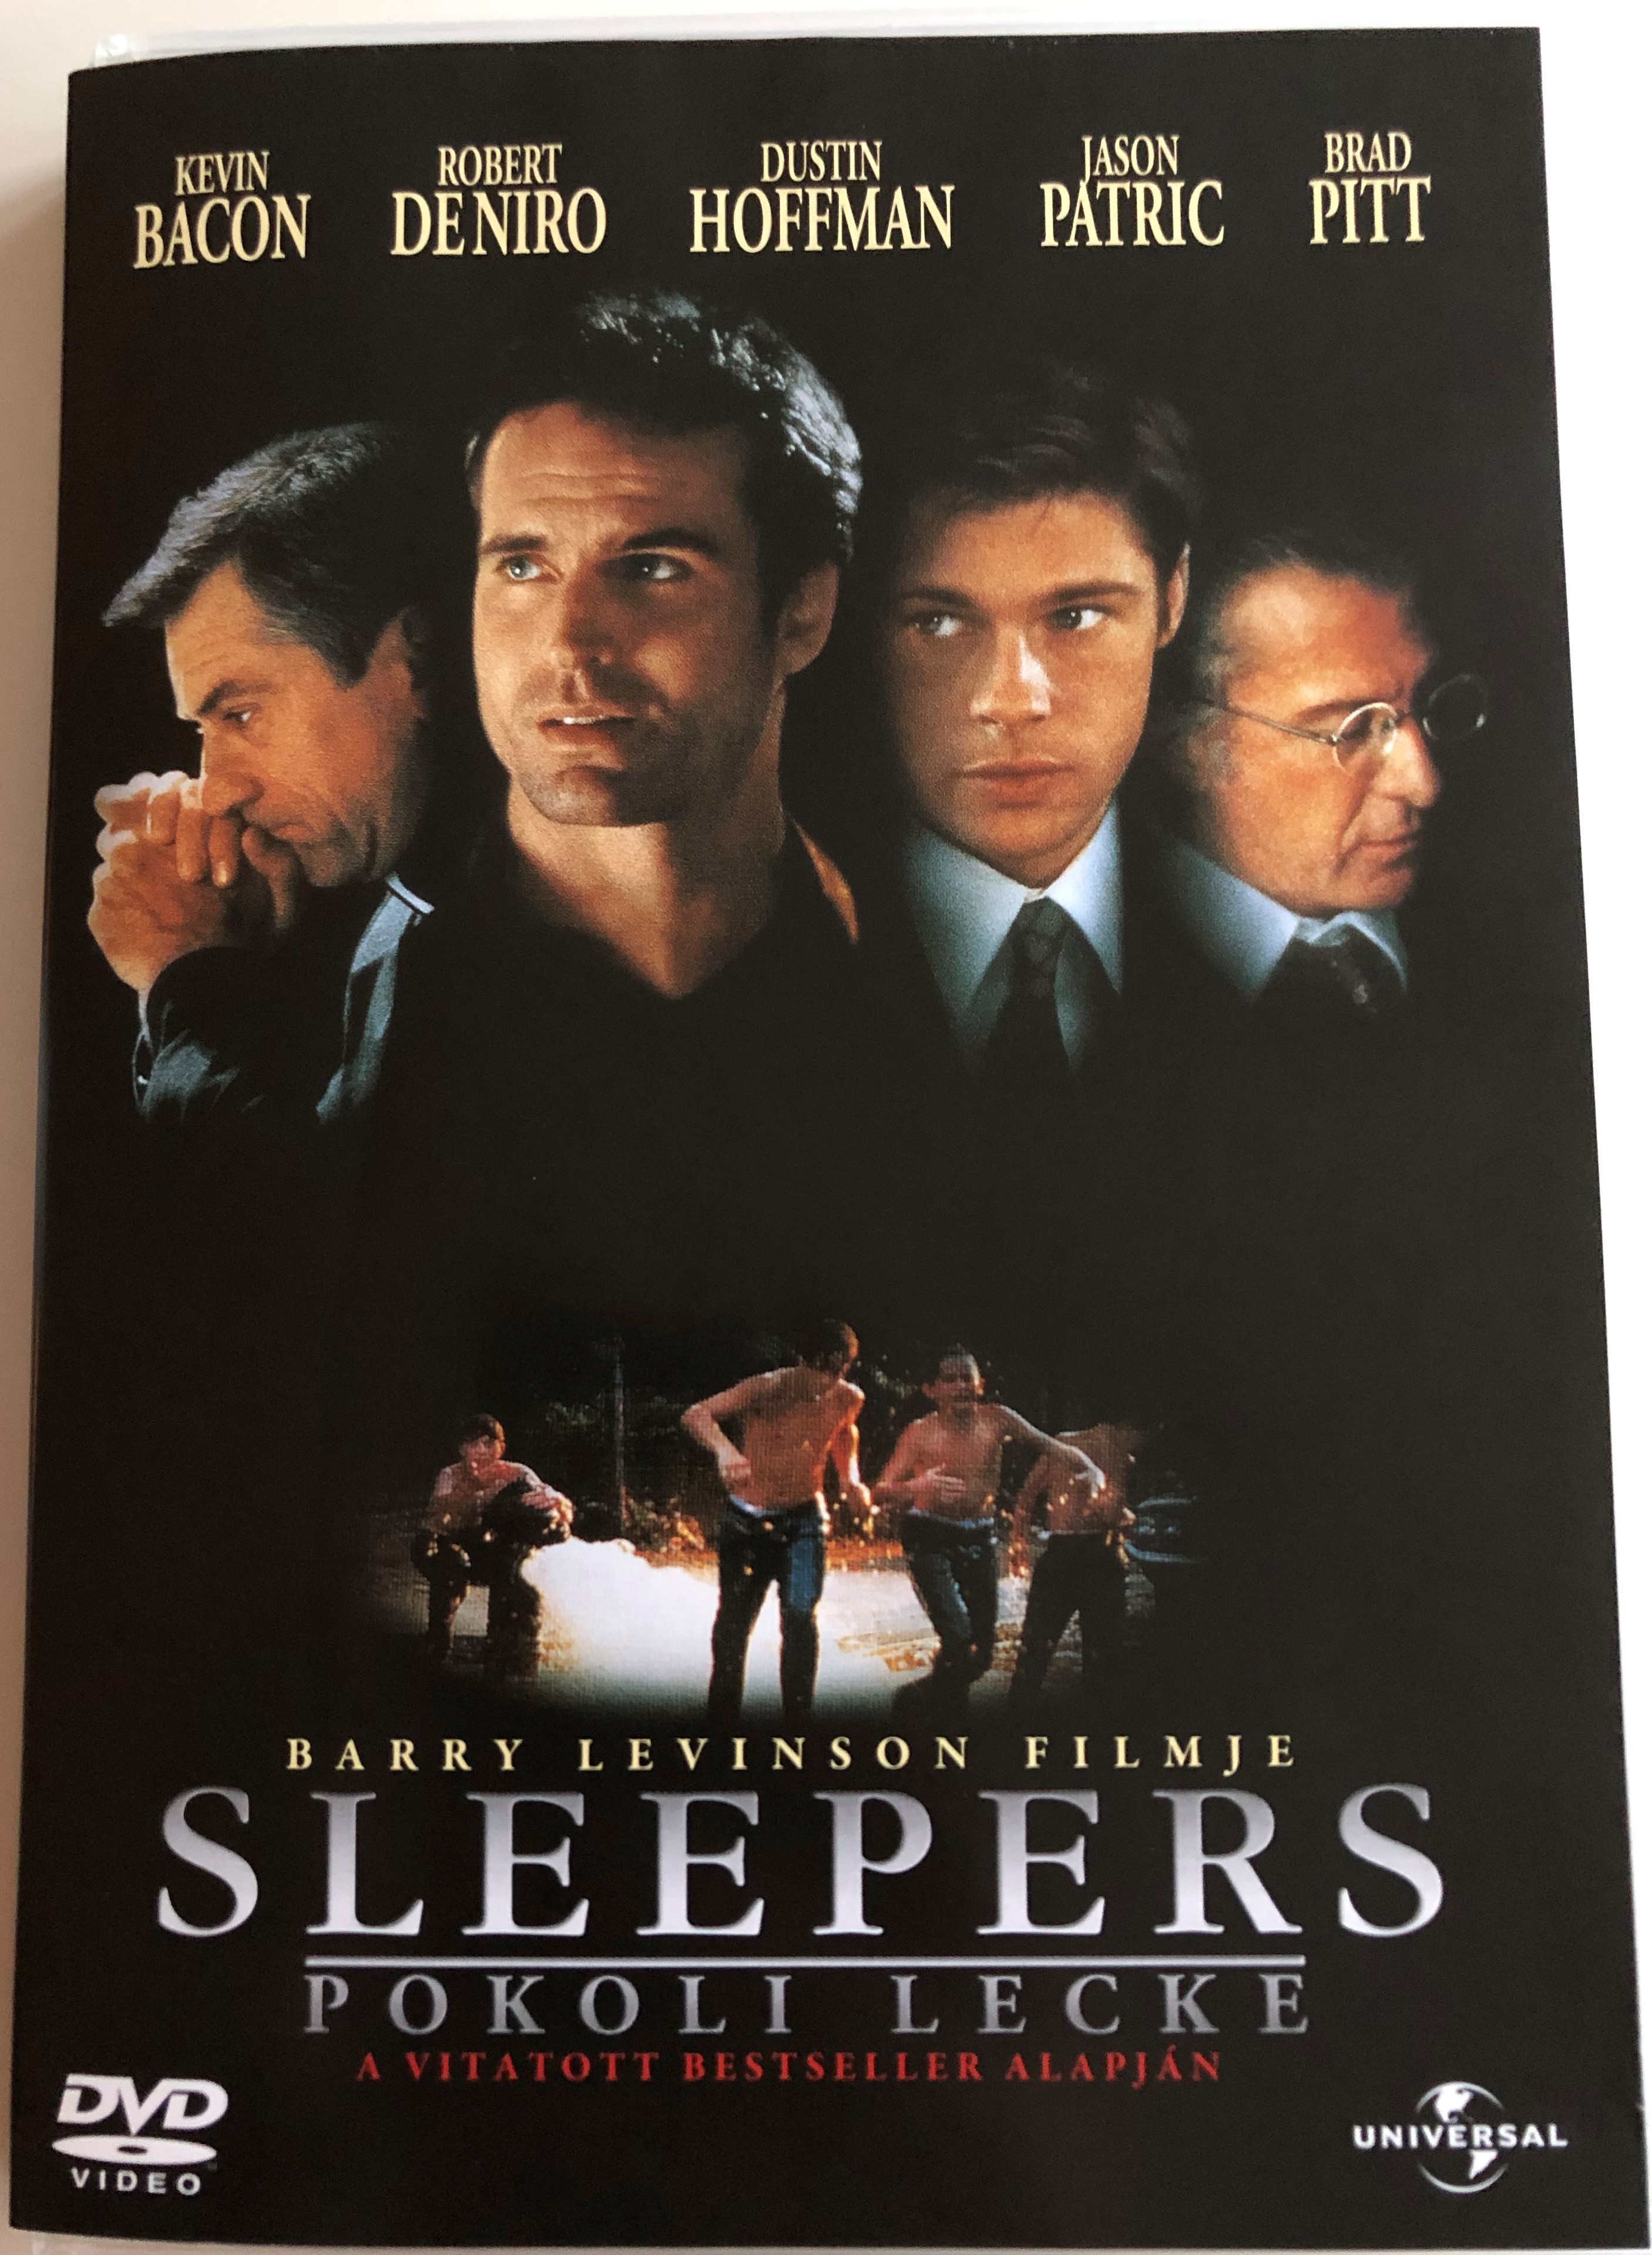 Sleepers DVD 1996 Pokoli lecke 1